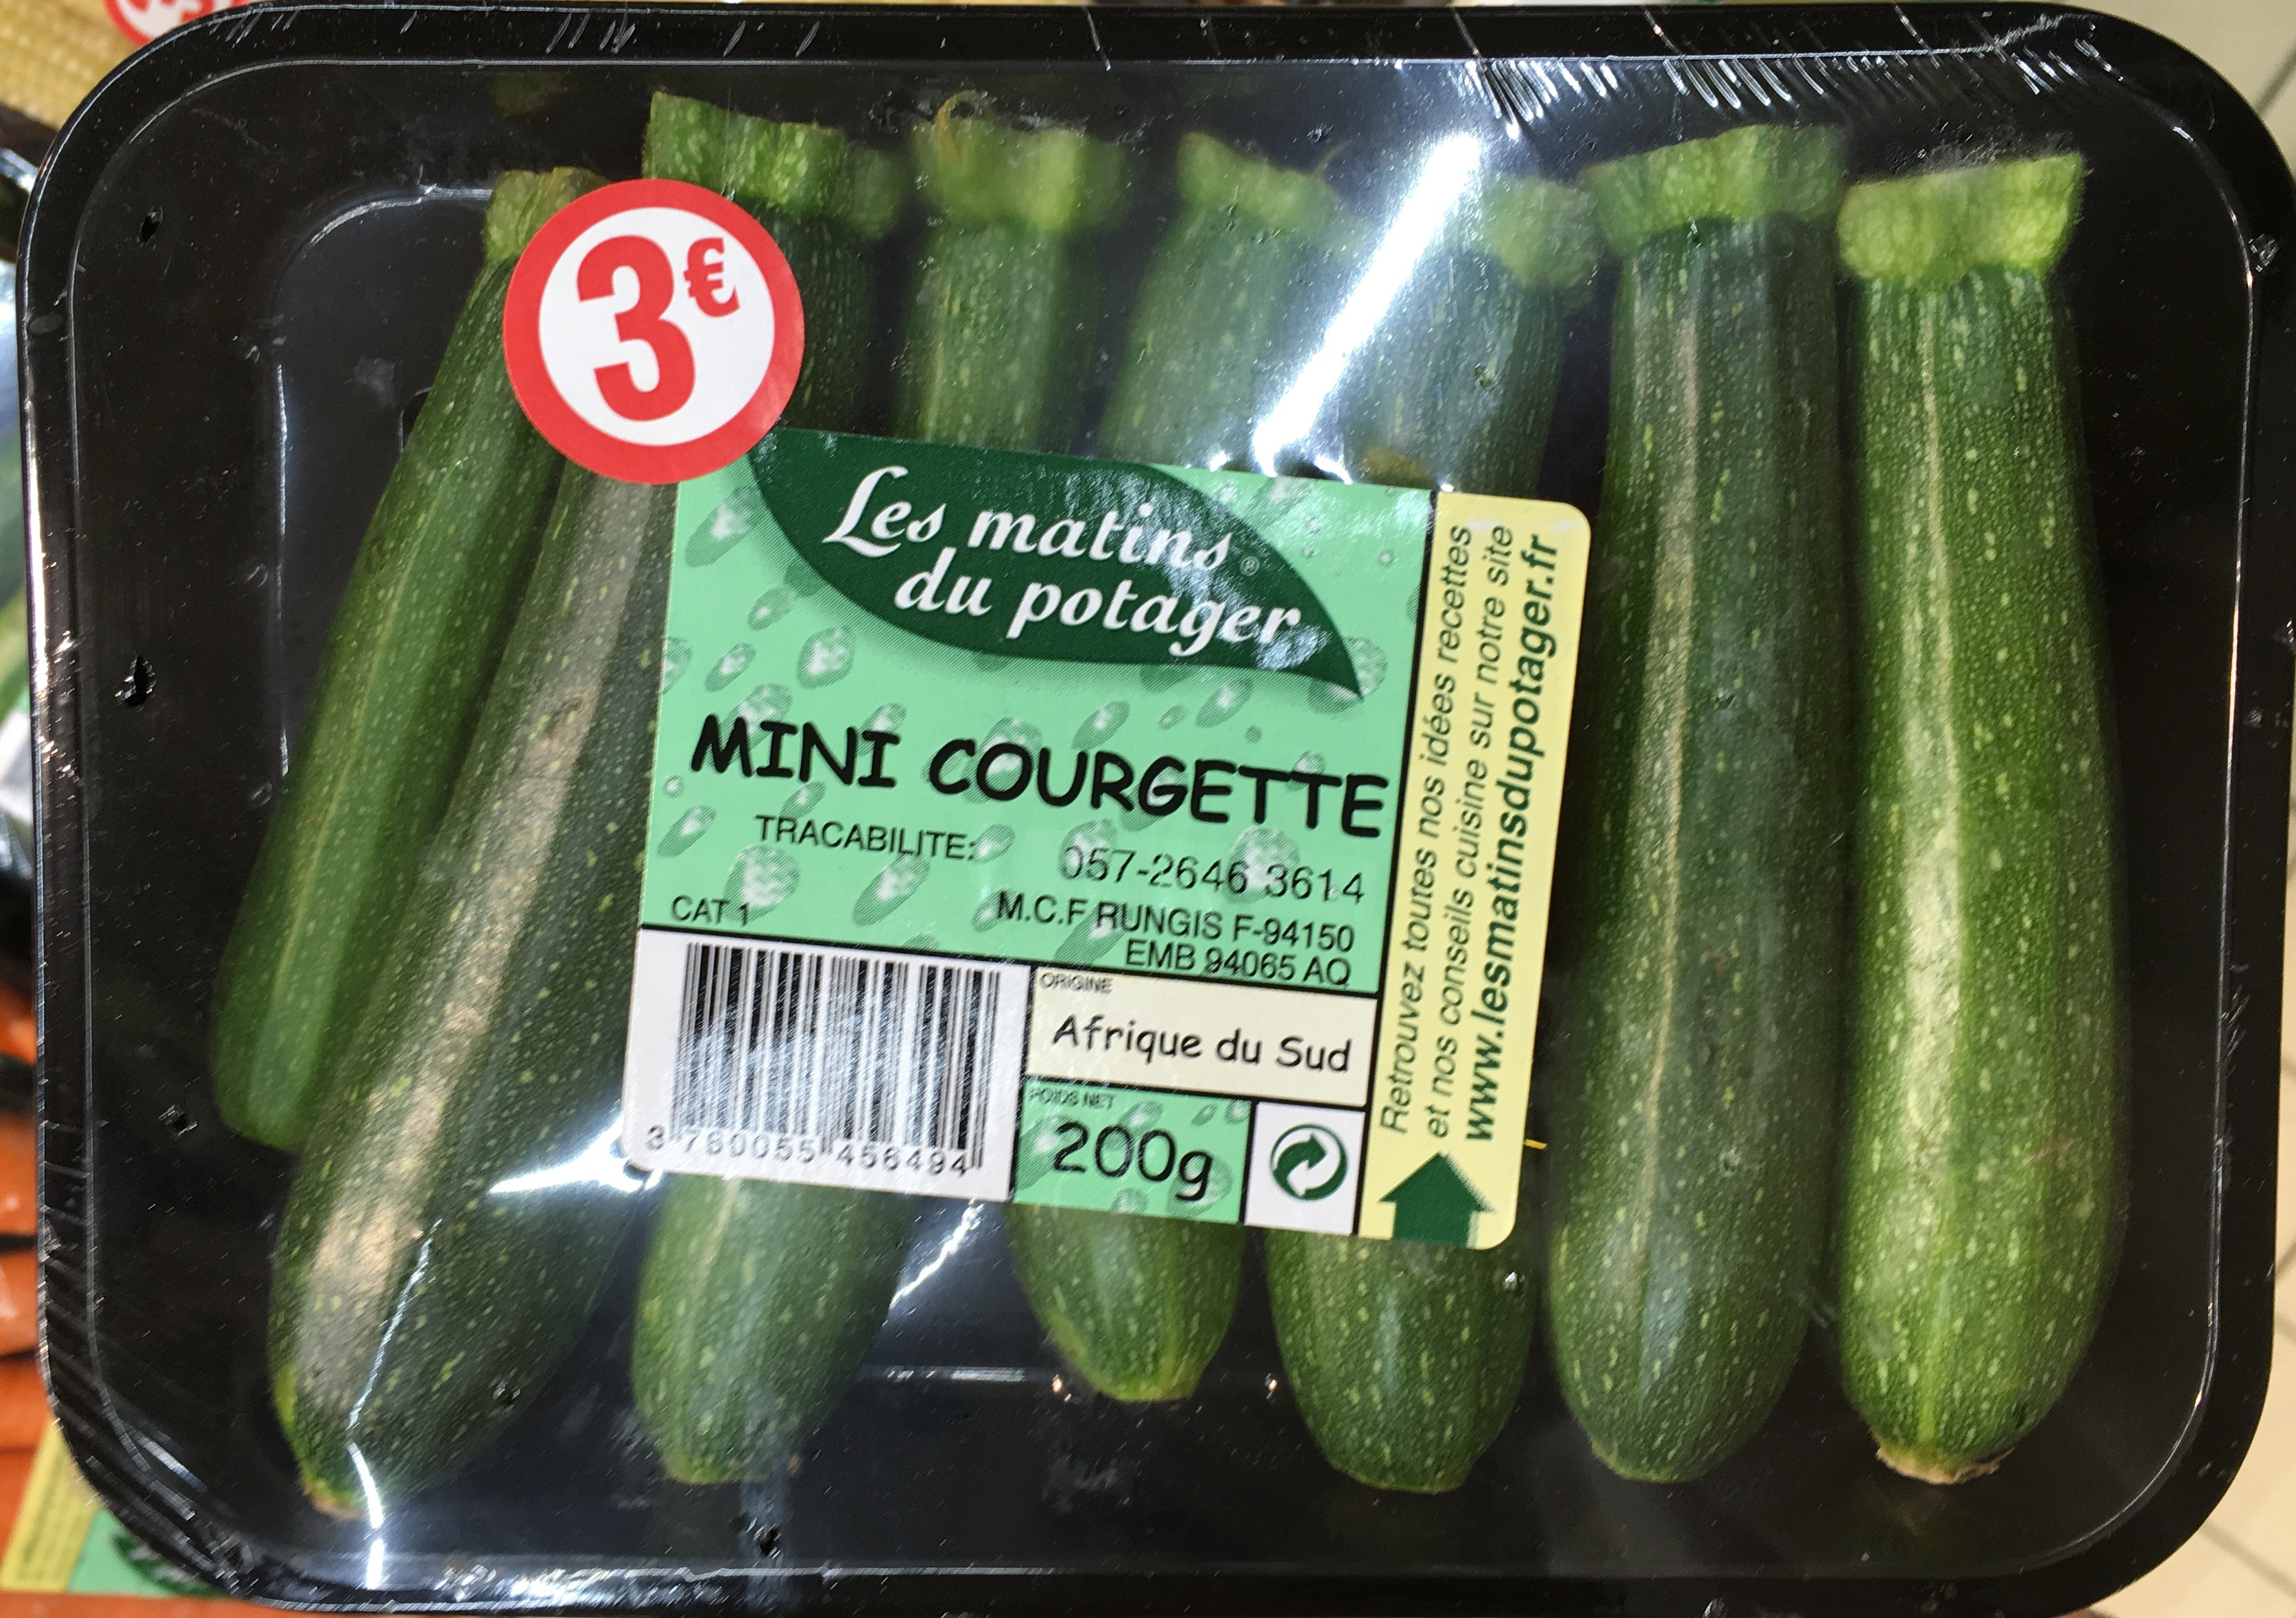 scheme boy know Mini Courgette - Les matins du potager - 200g